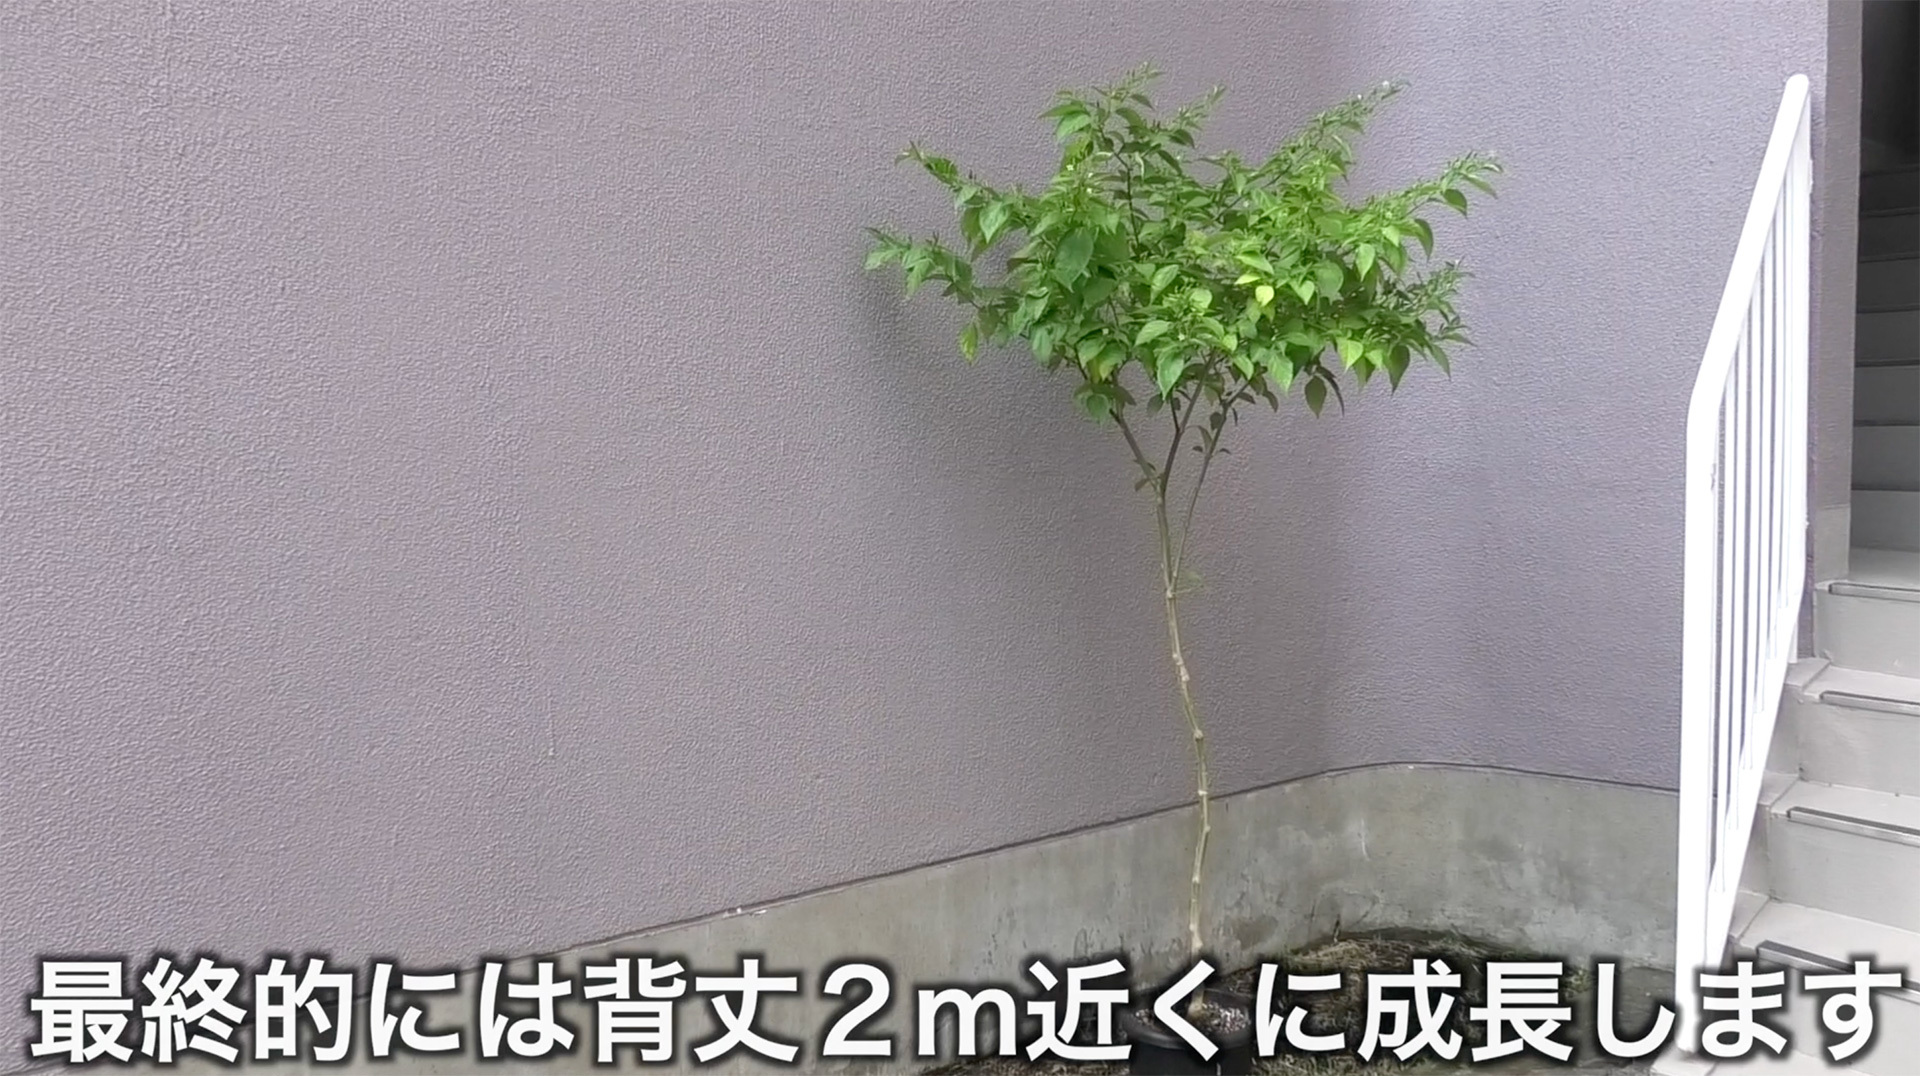 背が高くなるので特に鉢植えでは風などで倒れないように安定した状態で栽培する